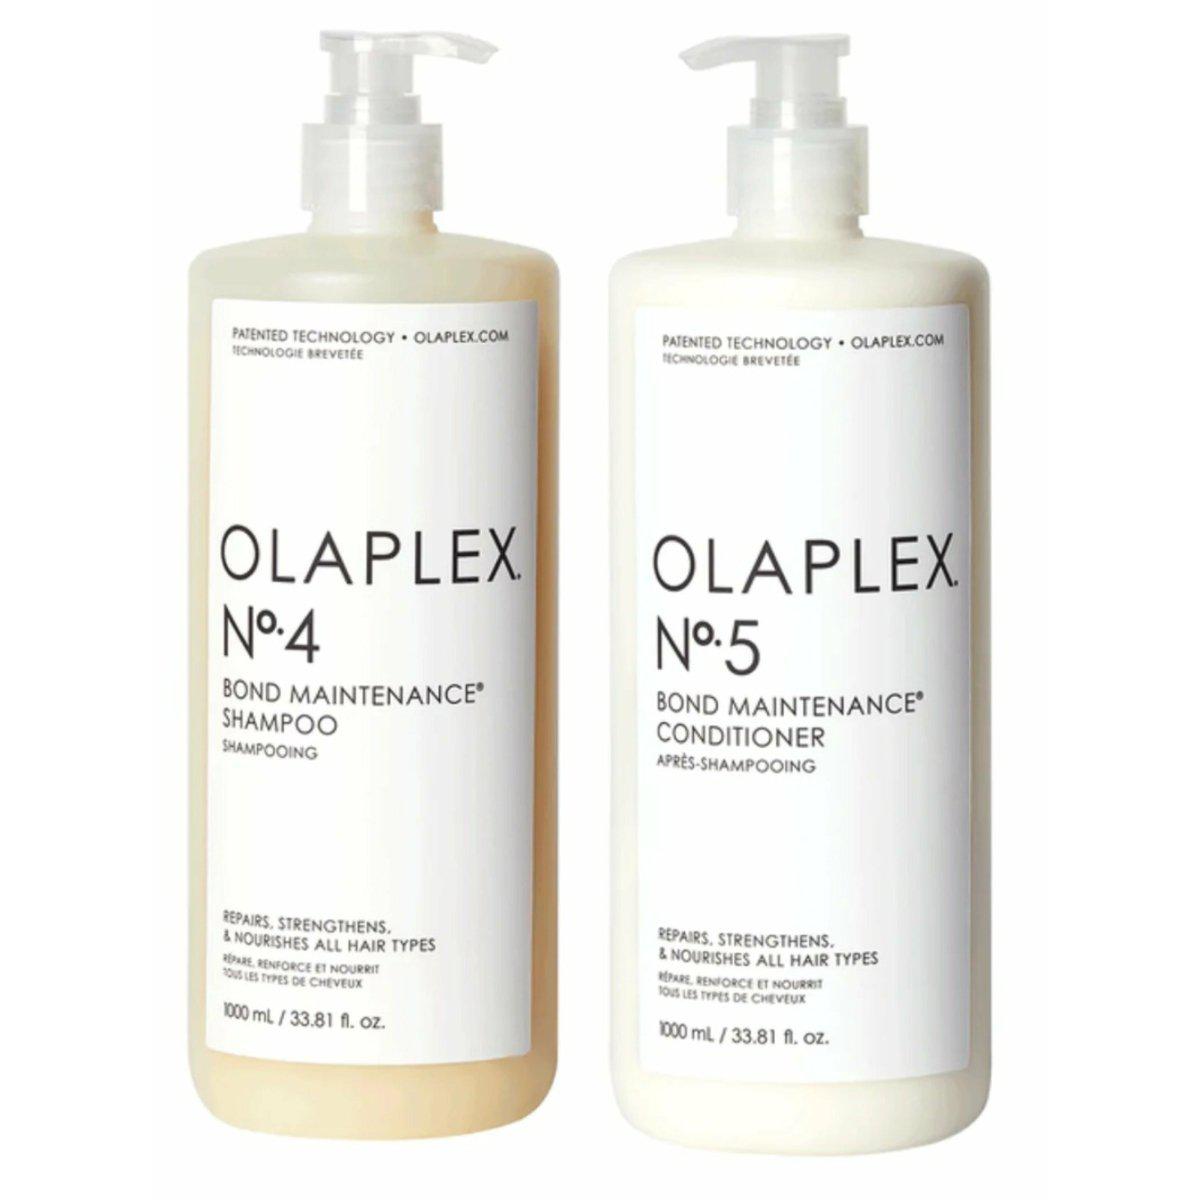 Olaplex Bond Maintenance Shampoo No. 4 & Conditioner 5